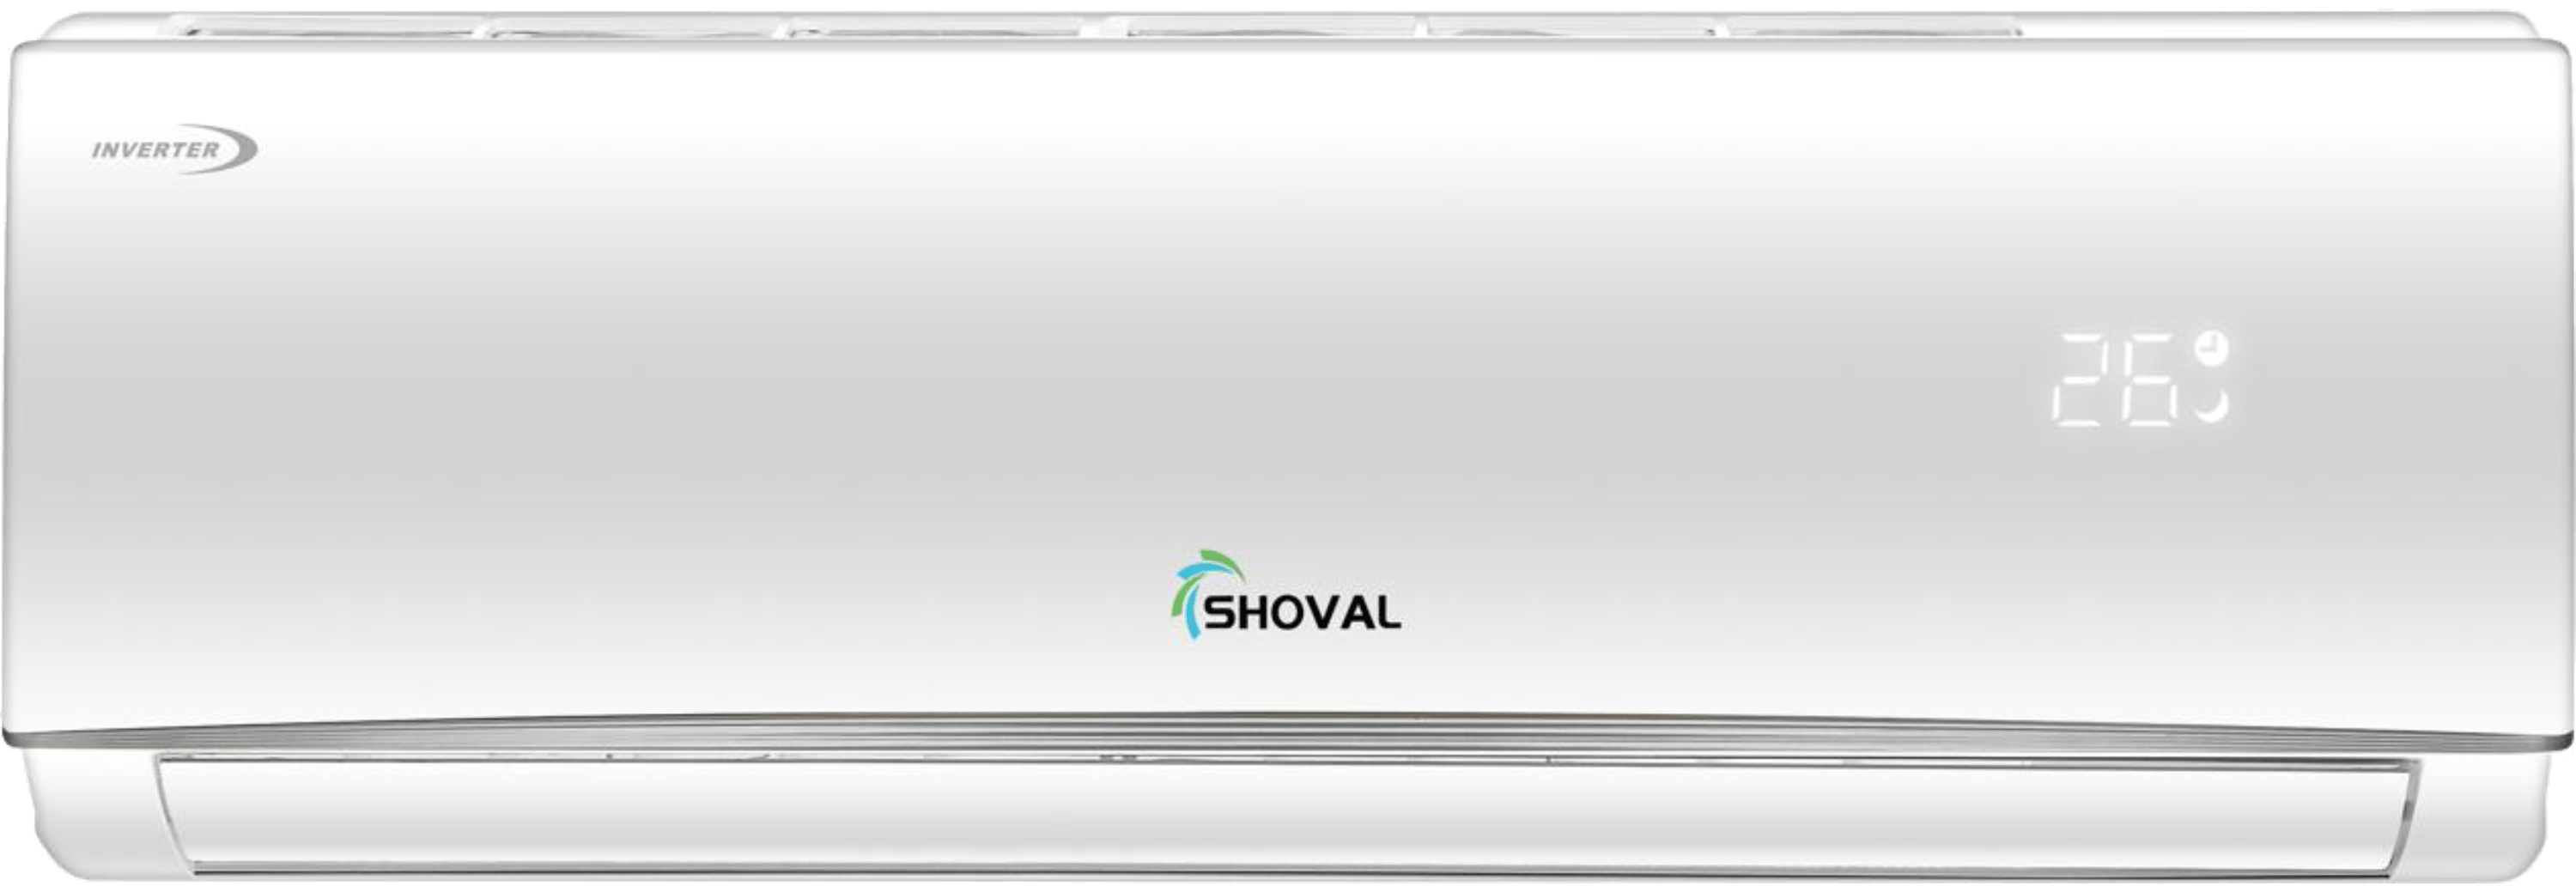 מזגן עילי Shoval SH-11000 - צבע לבן אחריות ע"י היבואן הרשמי